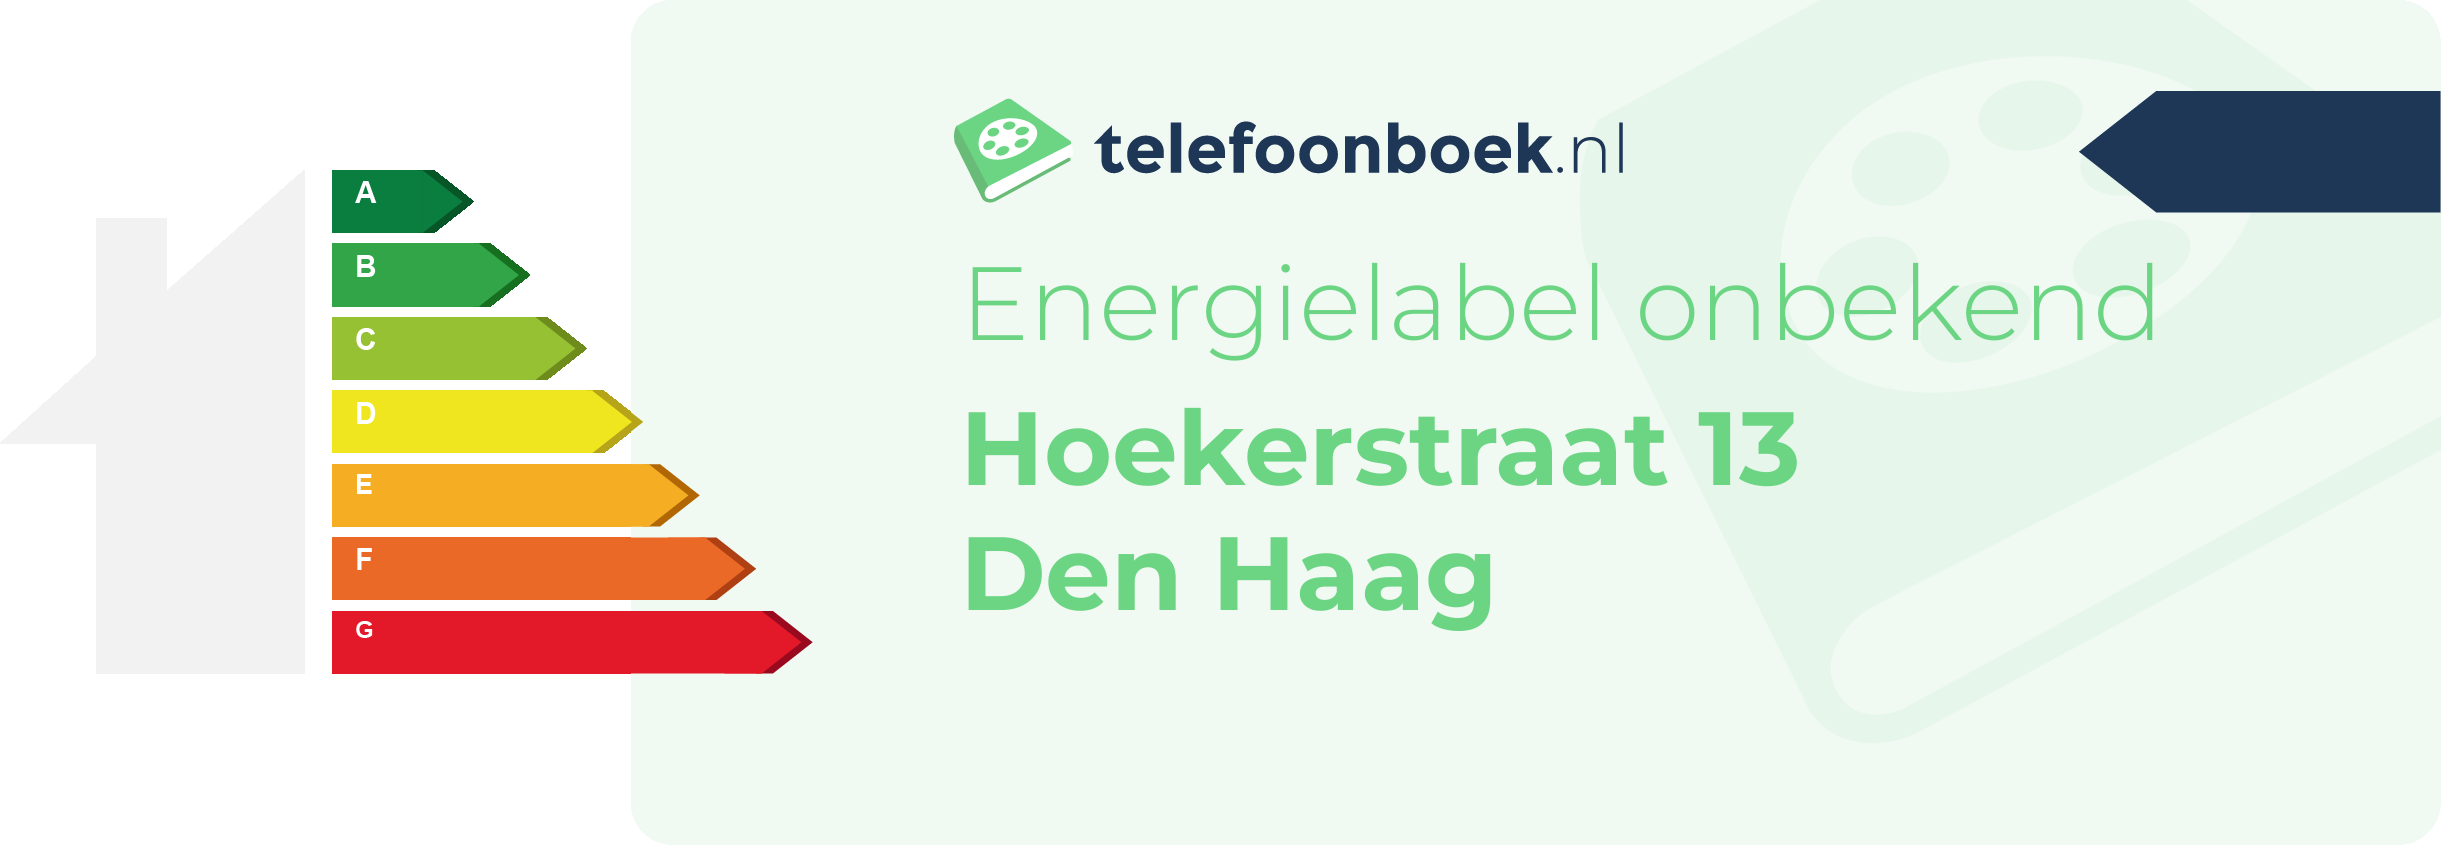 Energielabel Hoekerstraat 13 Den Haag